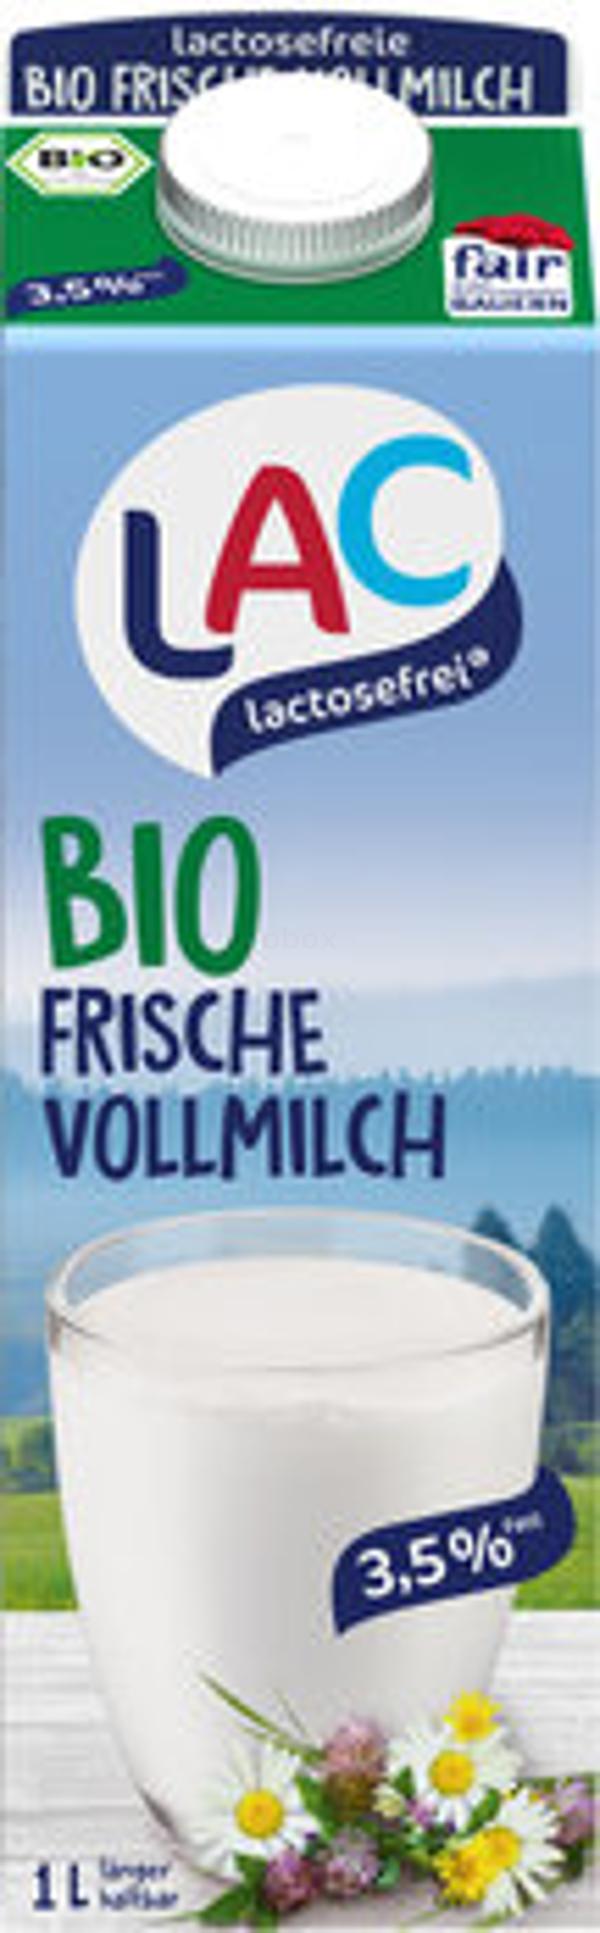 Produktfoto zu Frische Vollmilch 3,5% lactosefrei, 1 l